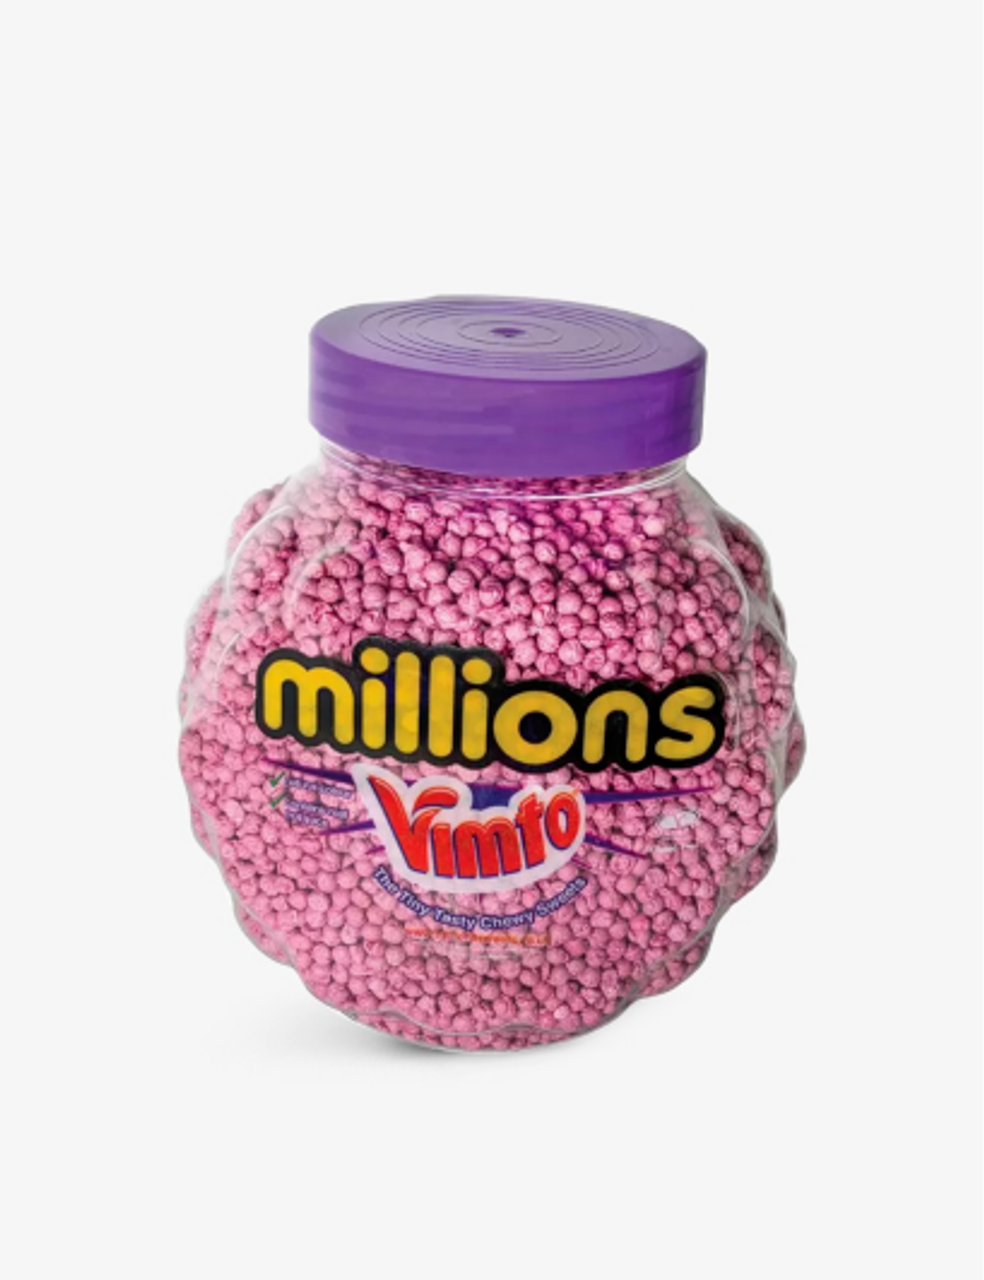 Millions Vimto Jar 2.27kg